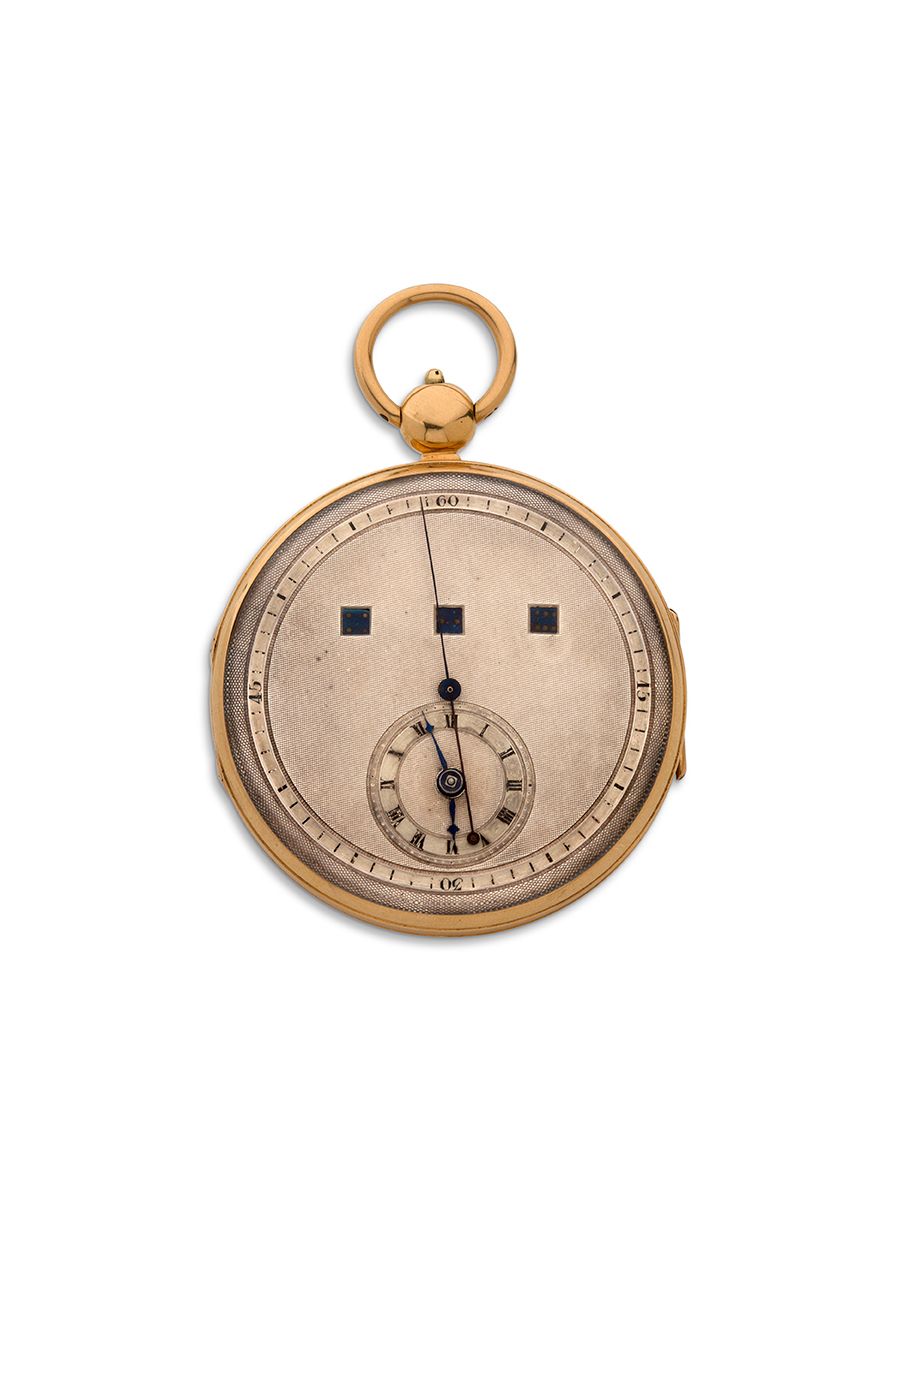 ANONYME 
Goldene Taschenuhr mit regulierendem Zifferblatt, Sekunden aus der Mitt&hellip;